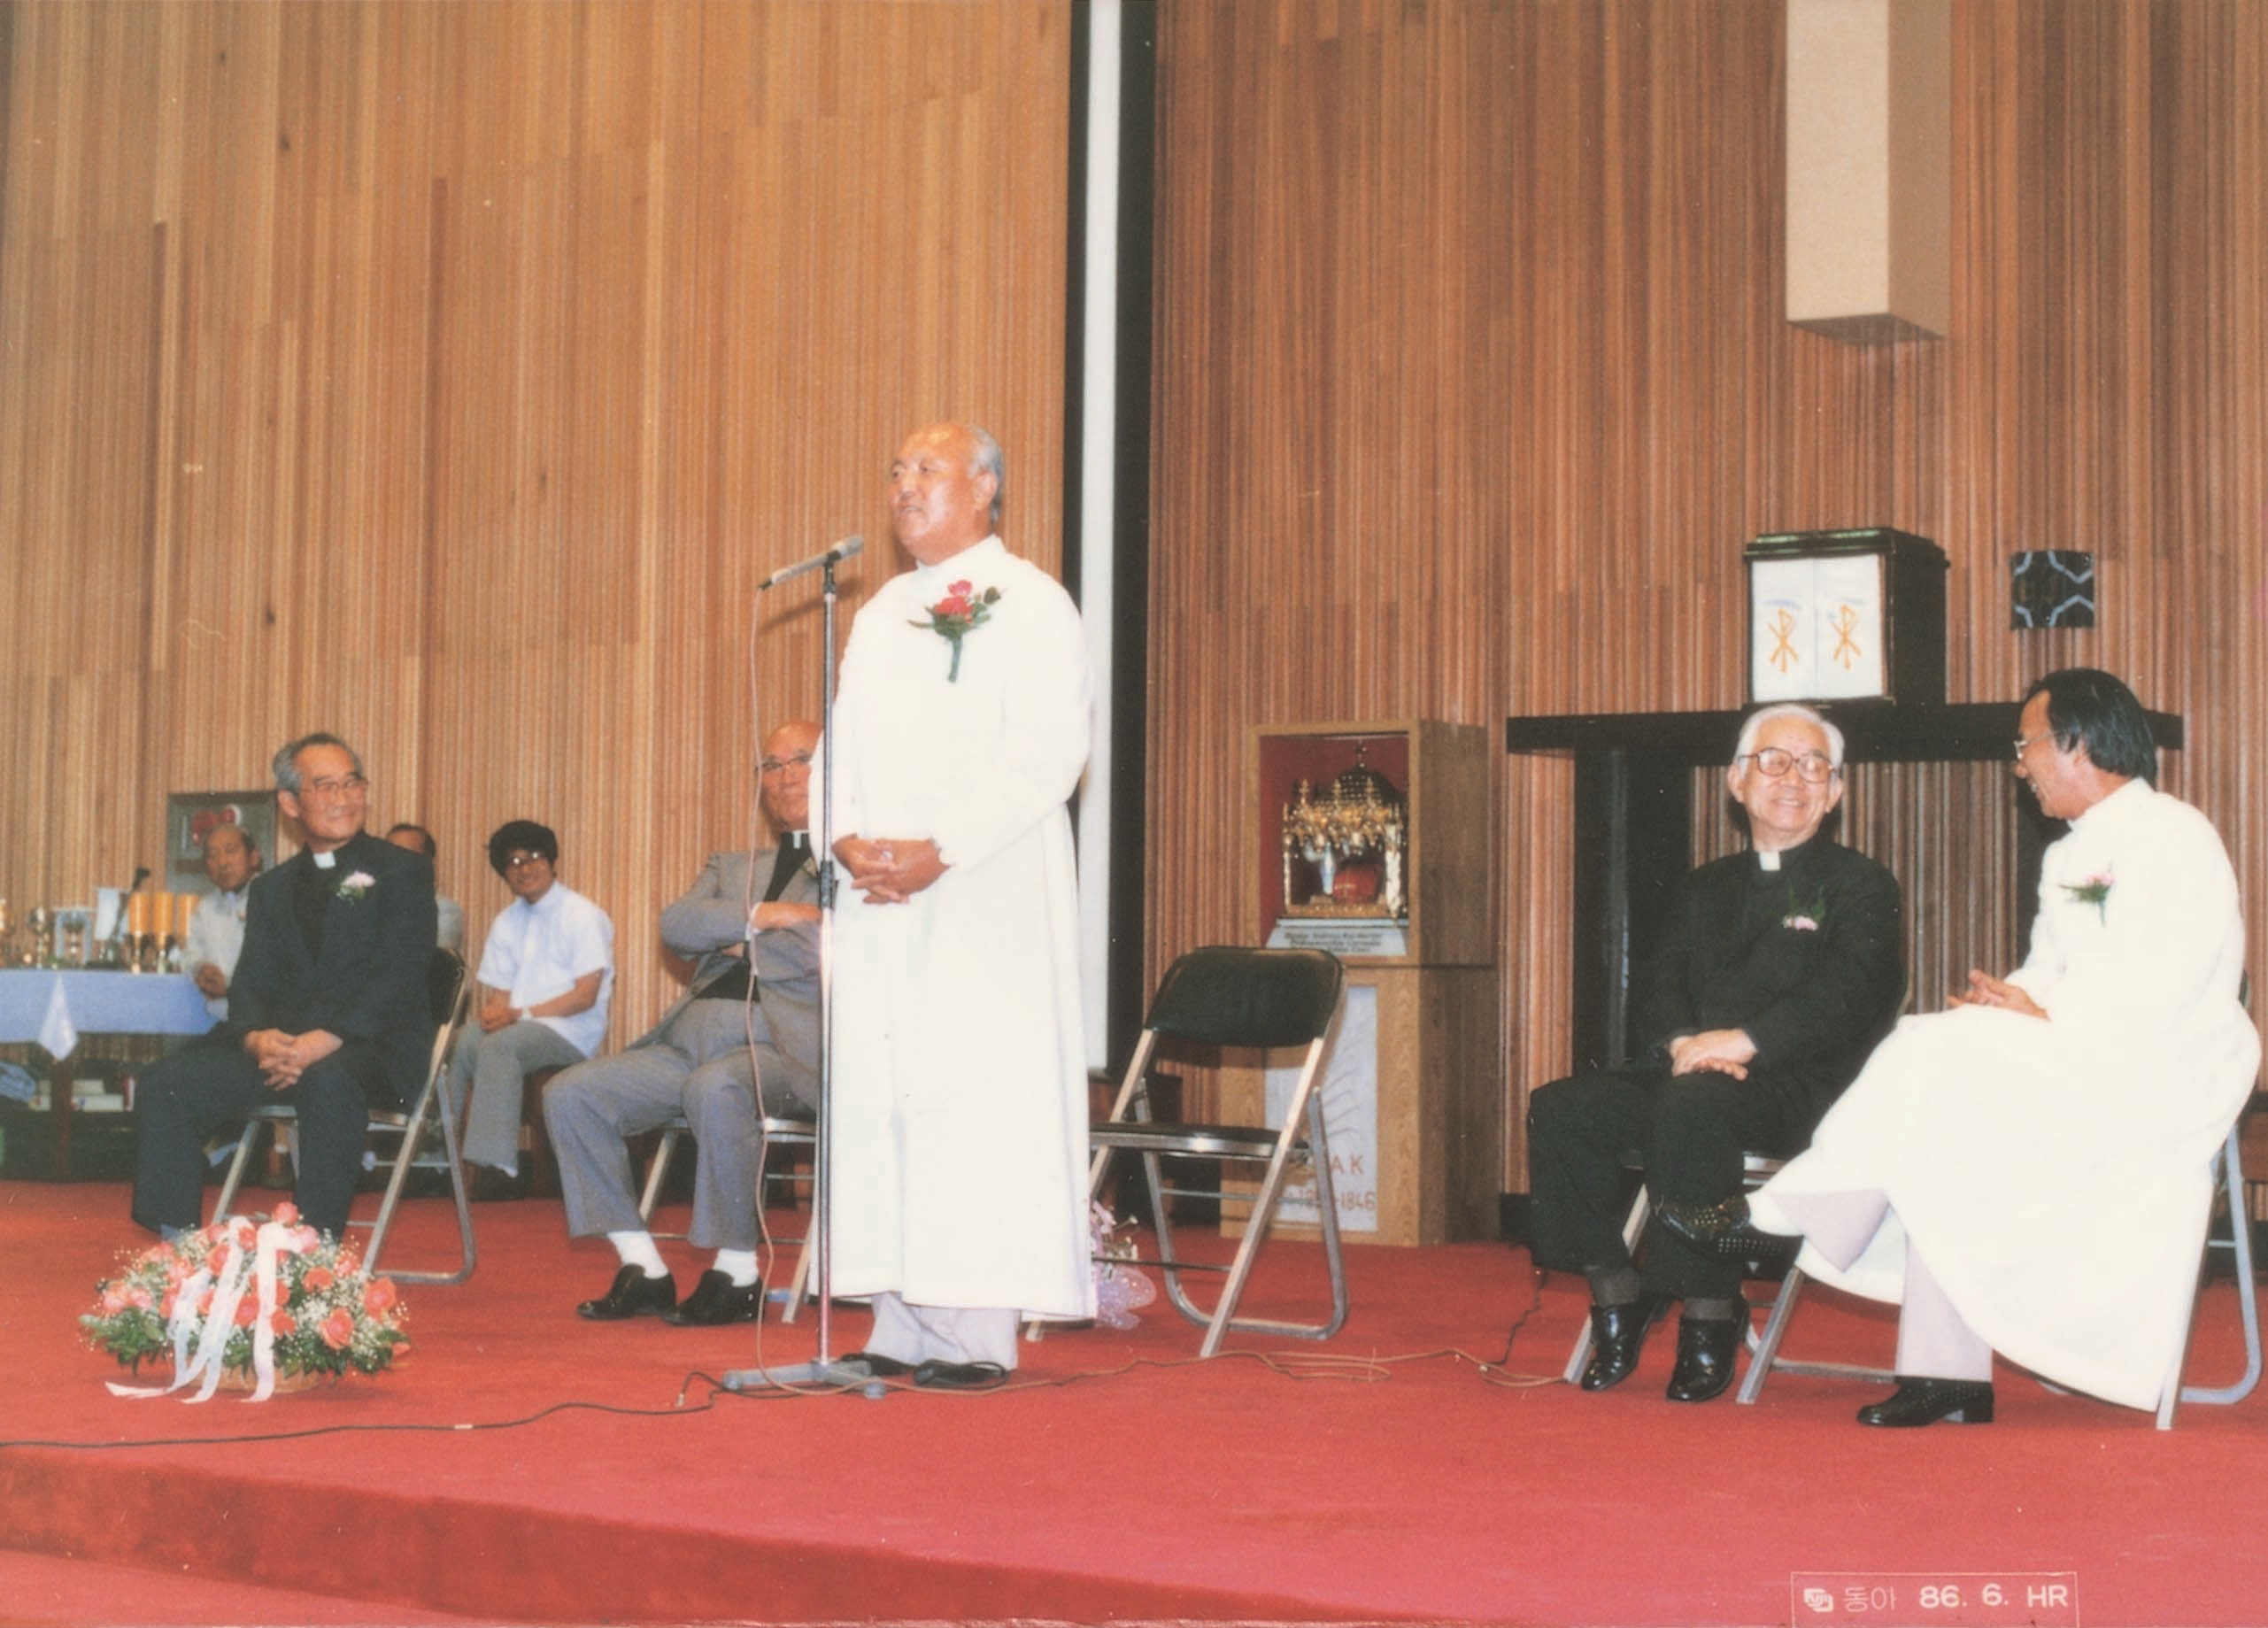 가톨릭대학 (1959~1992) (8)의 관련된 이미지 입니다.